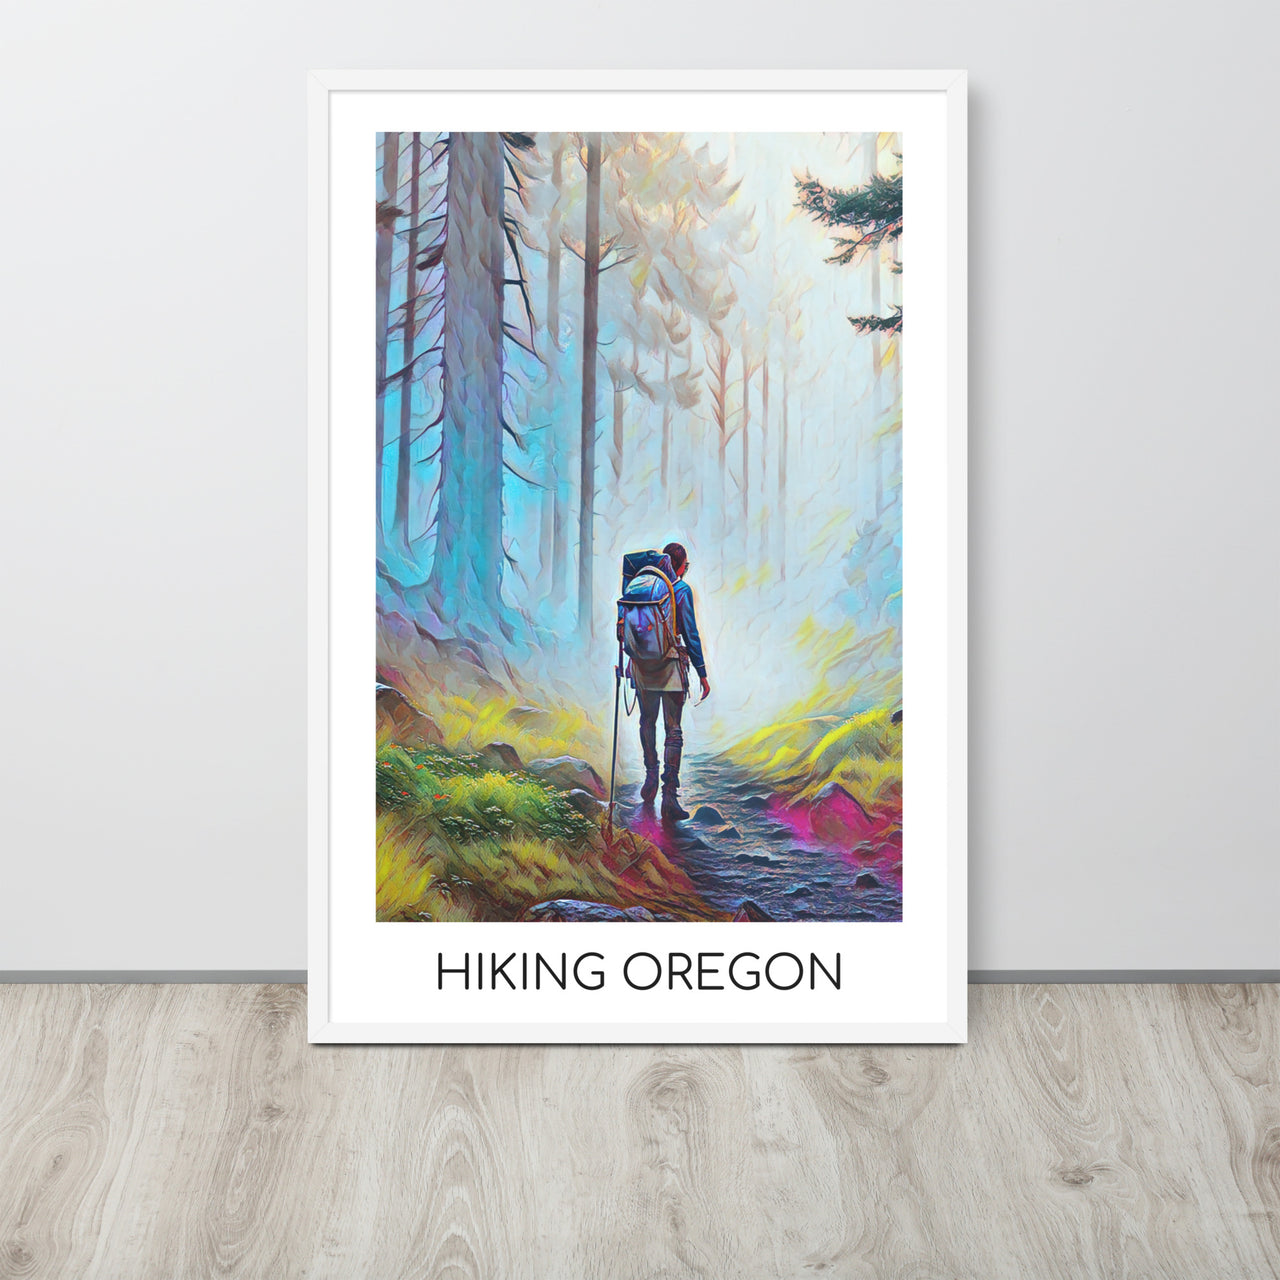 Hiking Oregon - Framed poster